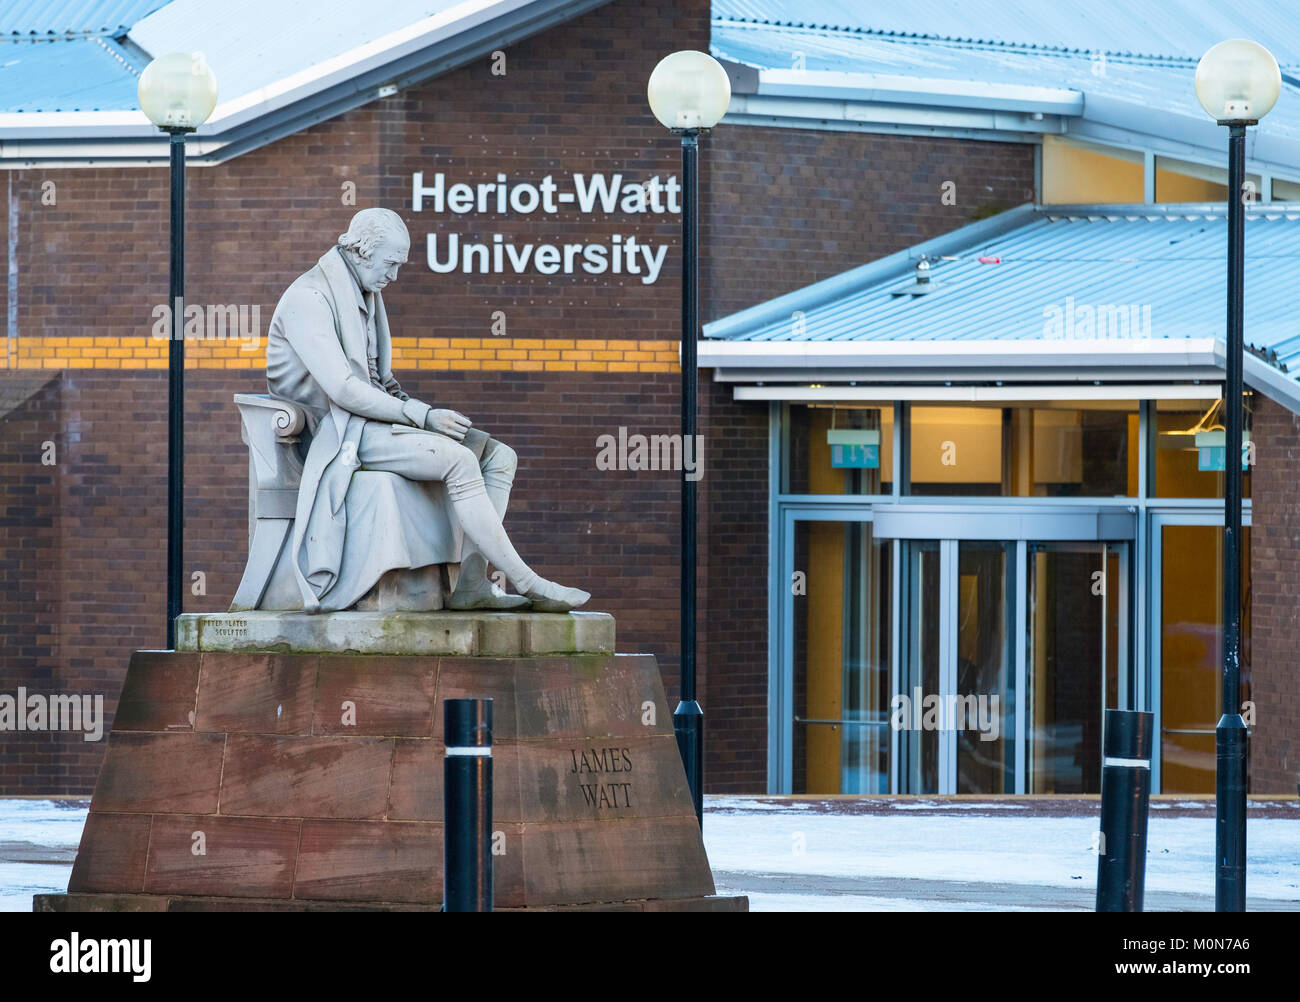 Avis de statue de James Watt à l'extérieur de l'Université Heriot-Watt à Edimbourg, Ecosse, Royaume-Uni Banque D'Images